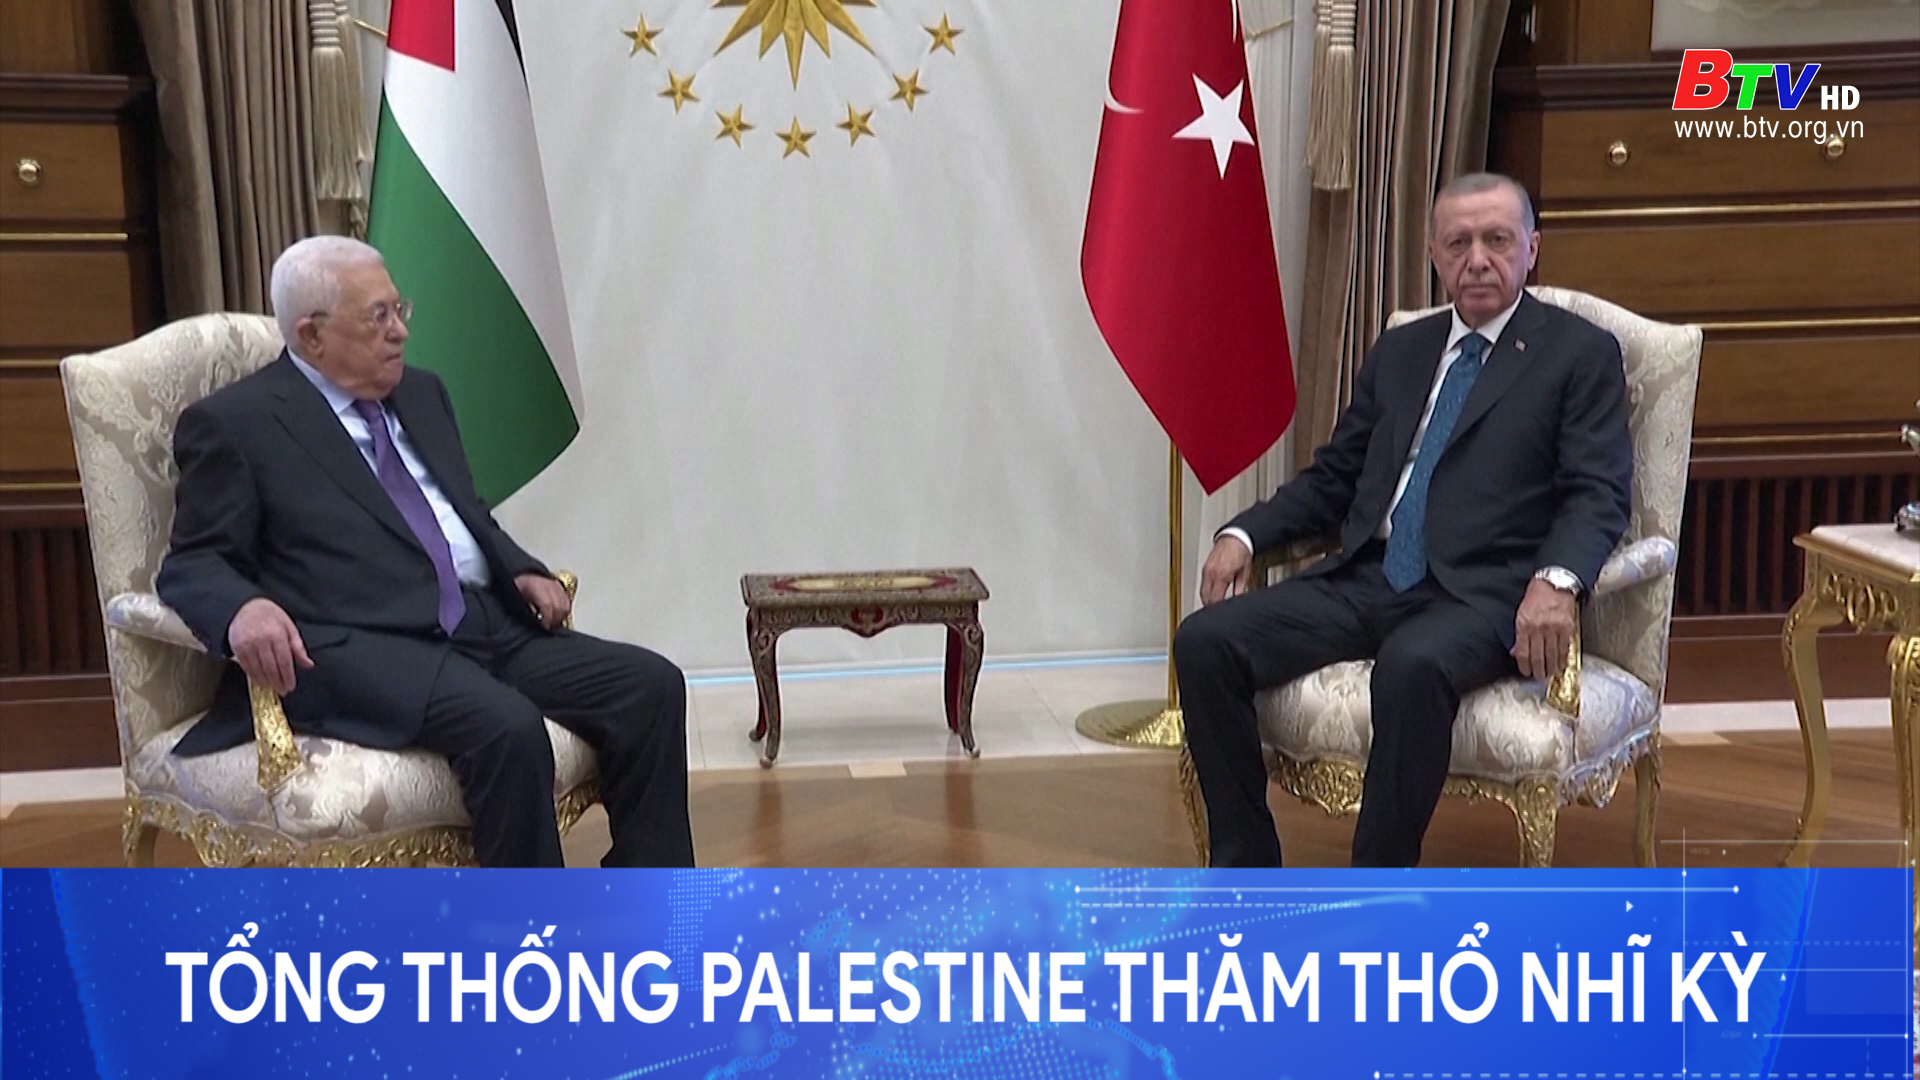 Tổng thống Palestine thăm Thổ Nhĩ Kỳ